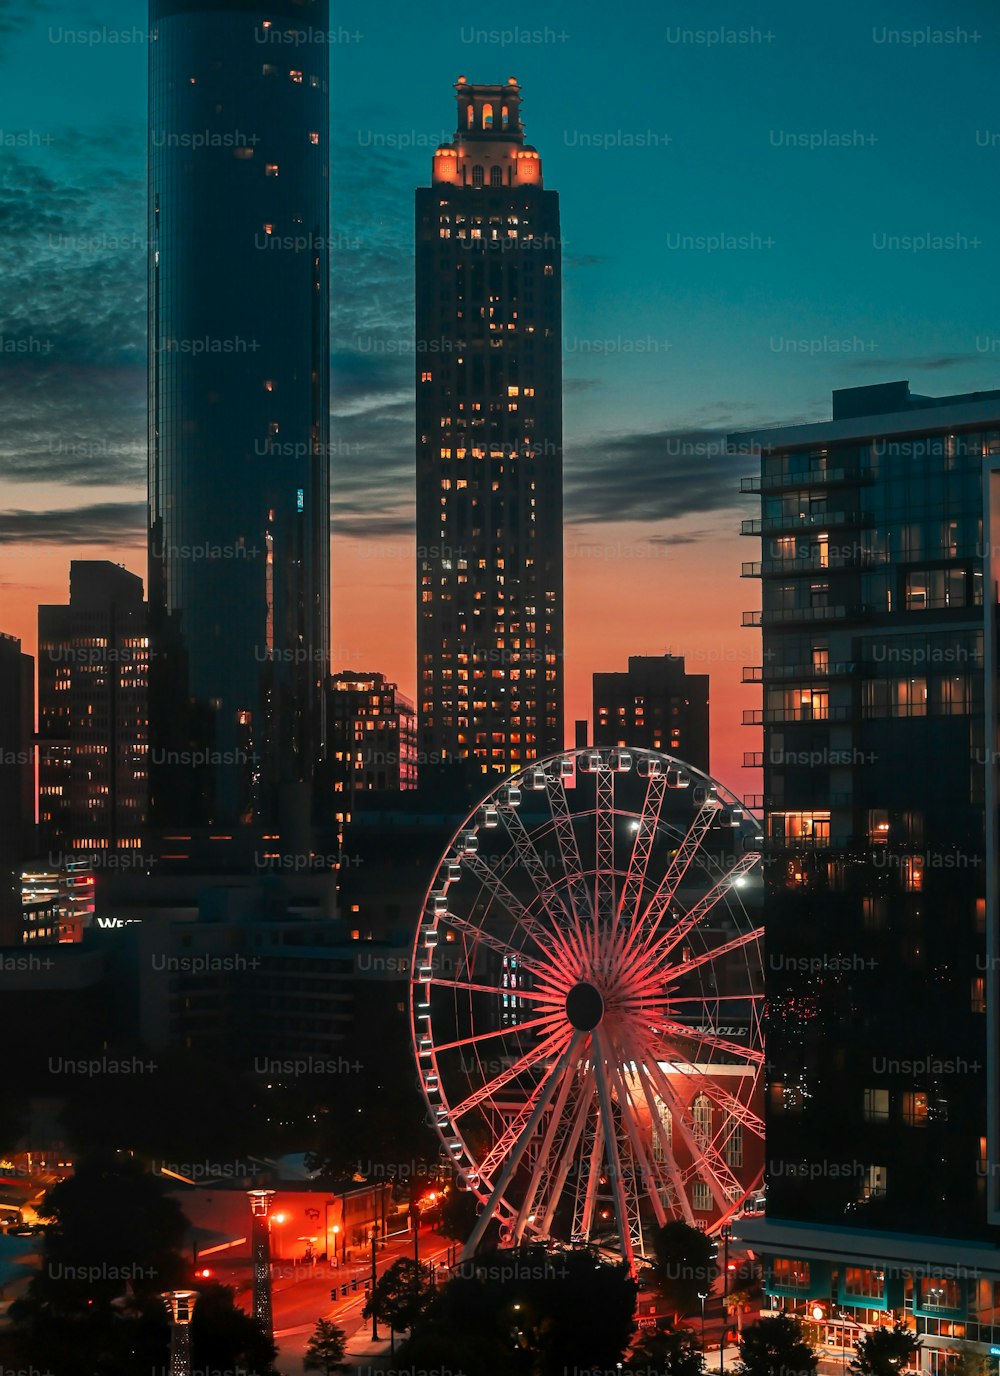 Eine Luftaufnahme von Atlanta City mit einer Reihe von hohen Wolkenkratzern mit einem großen Riesenrad im Vordergrund